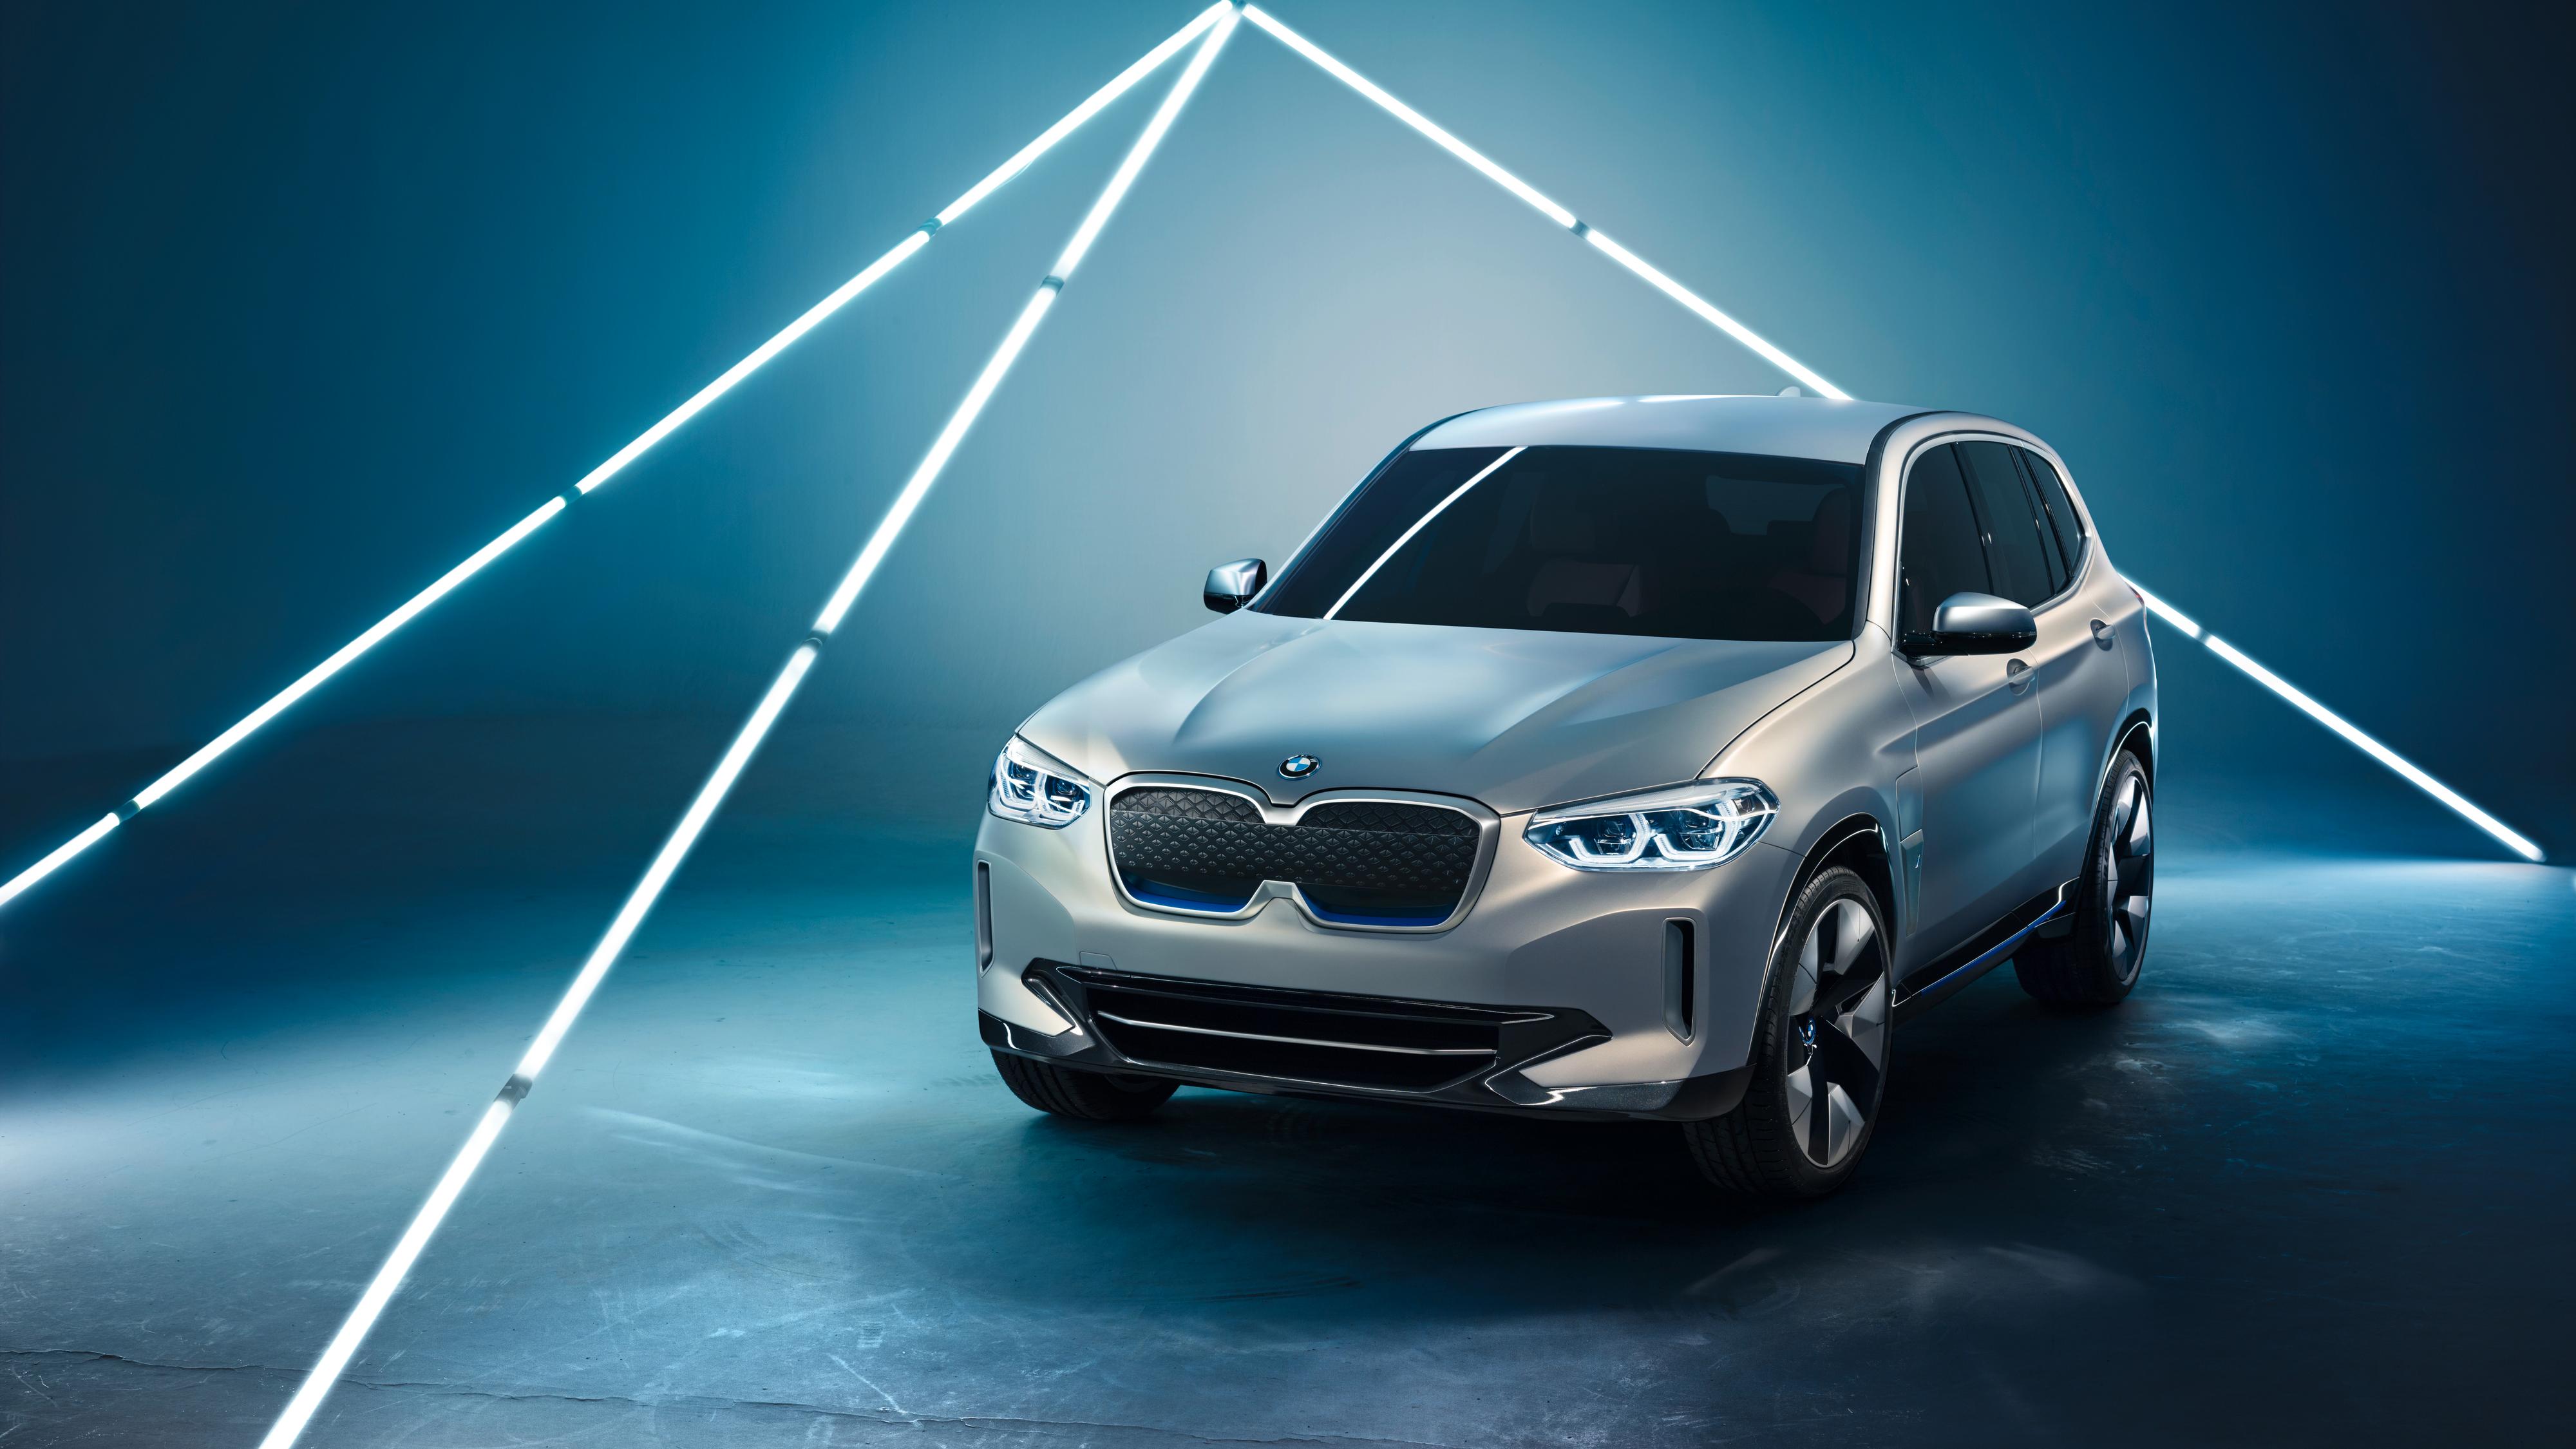 Her er BMWs elektriske SUV